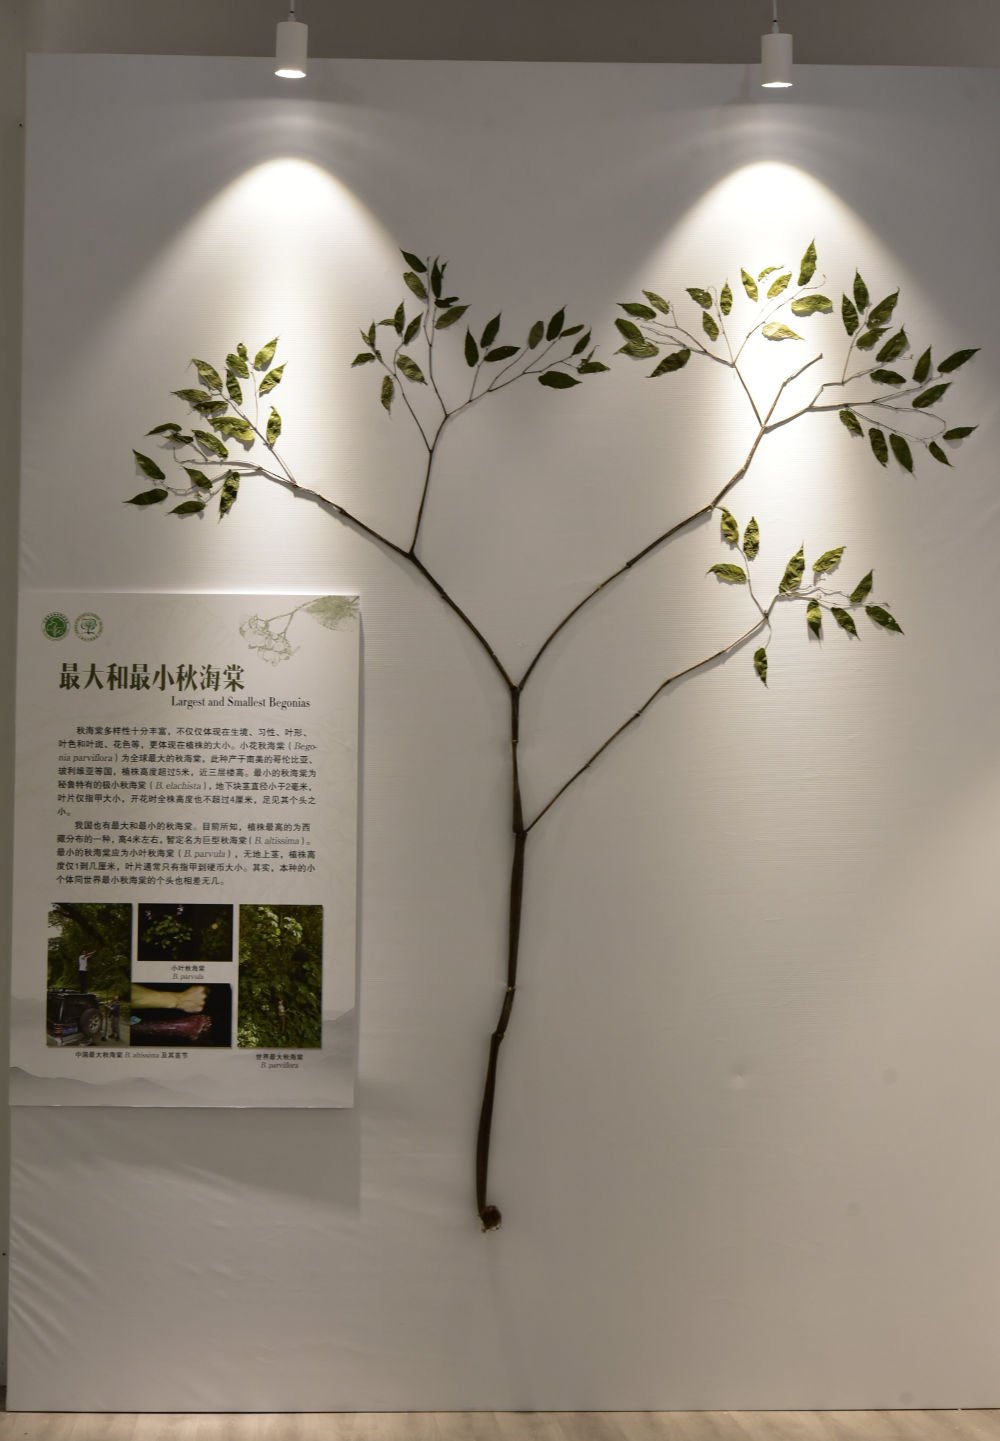 Spesies Begonia Tertinggi di Seluruh Asia Ditemukan di Tibet, Tiongkok